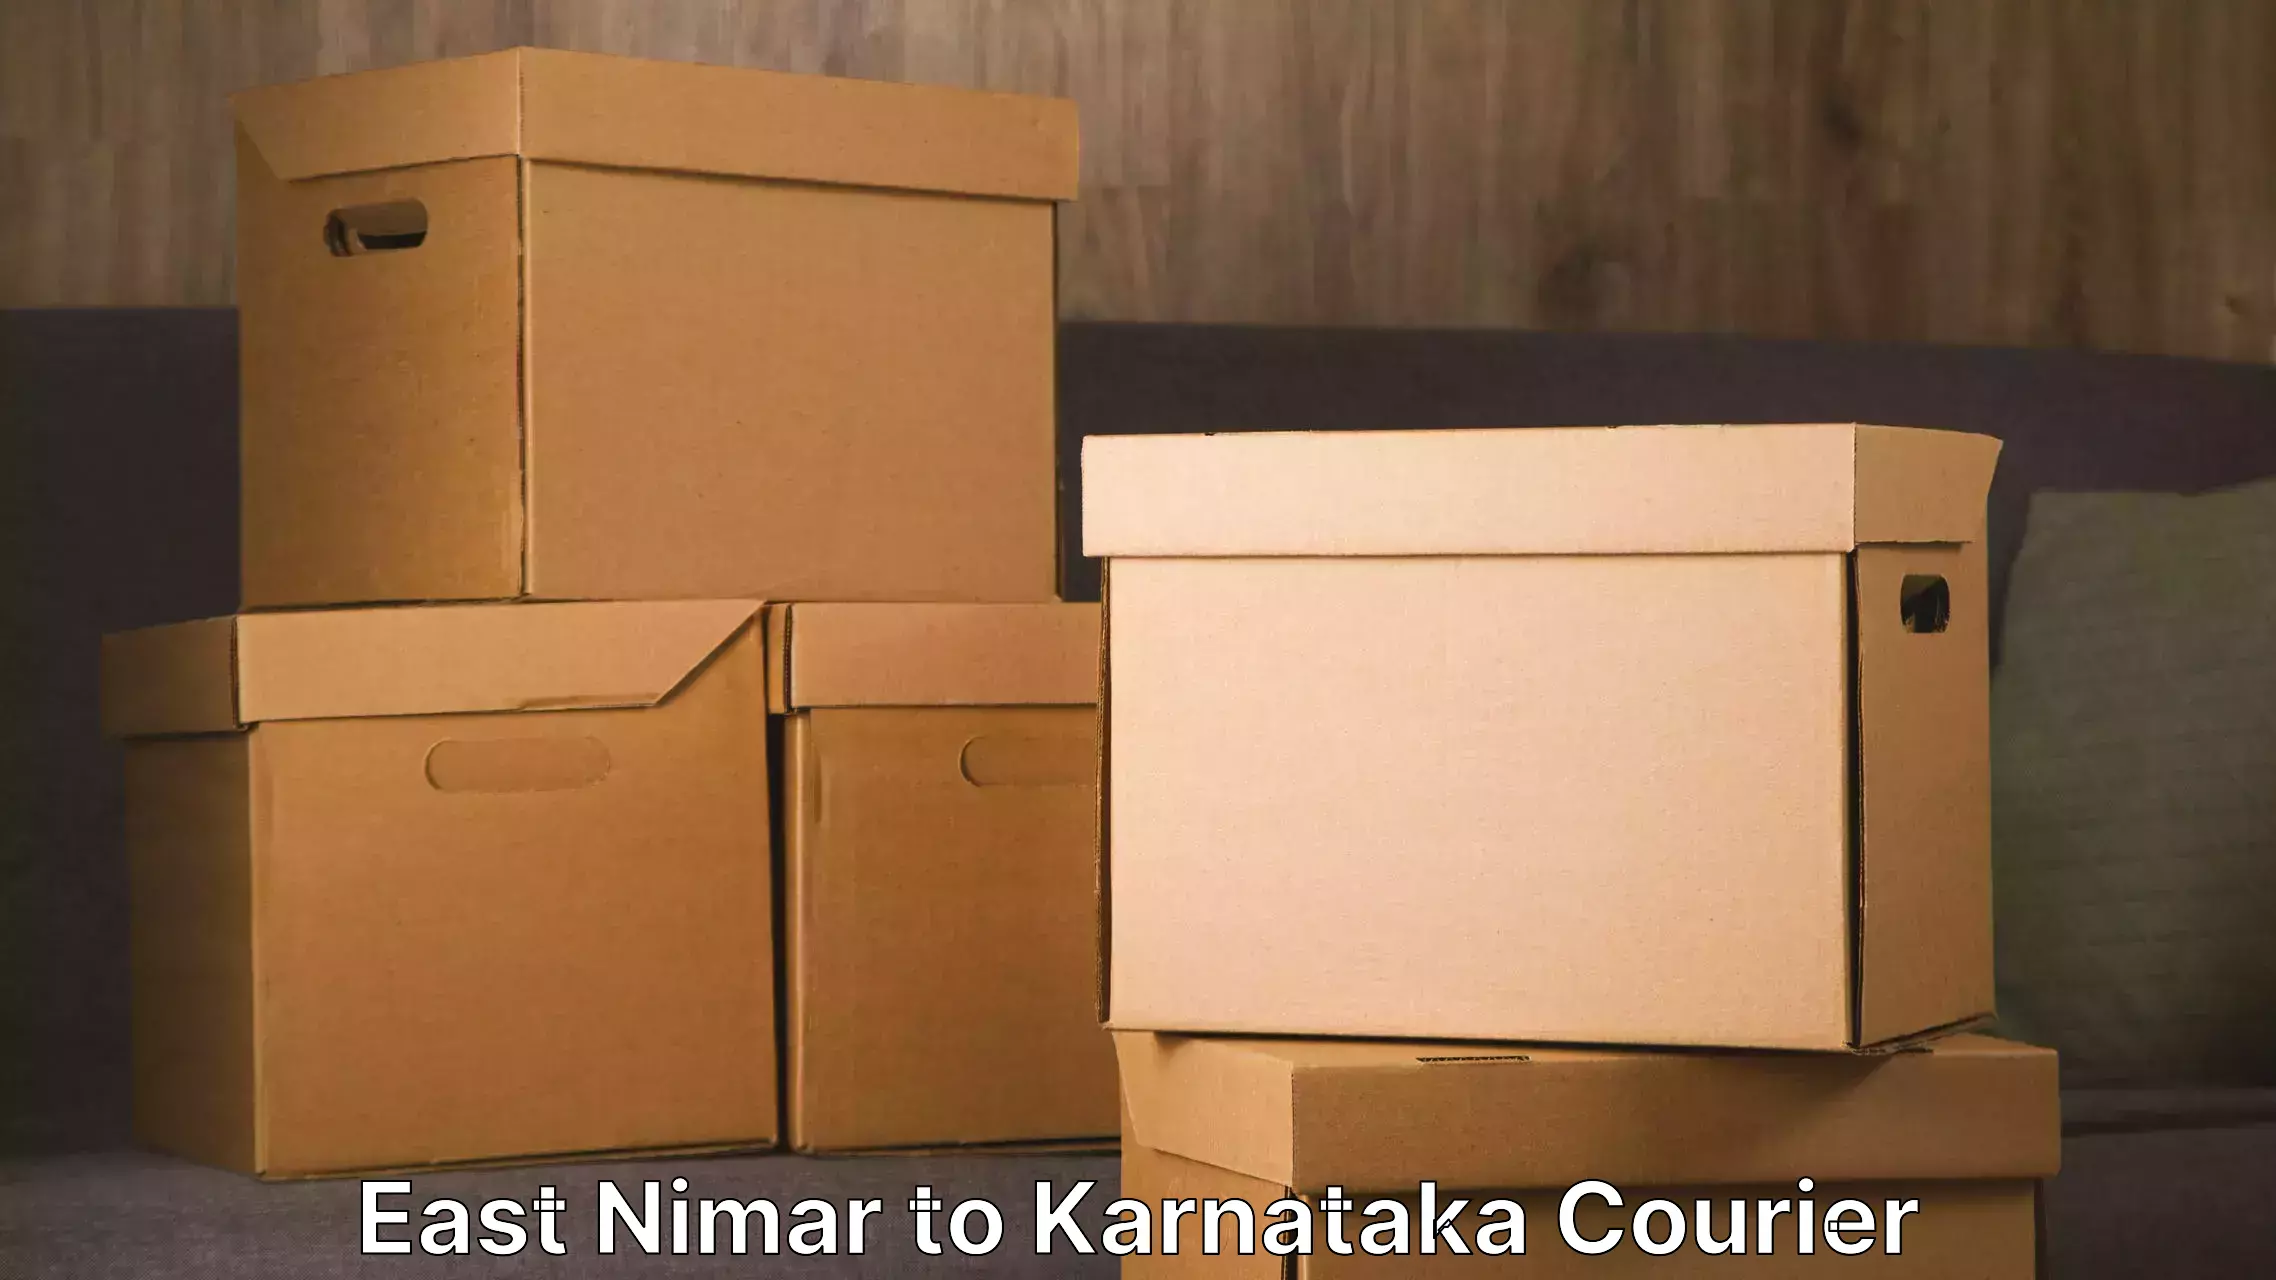 Reliable moving solutions East Nimar to Karnataka